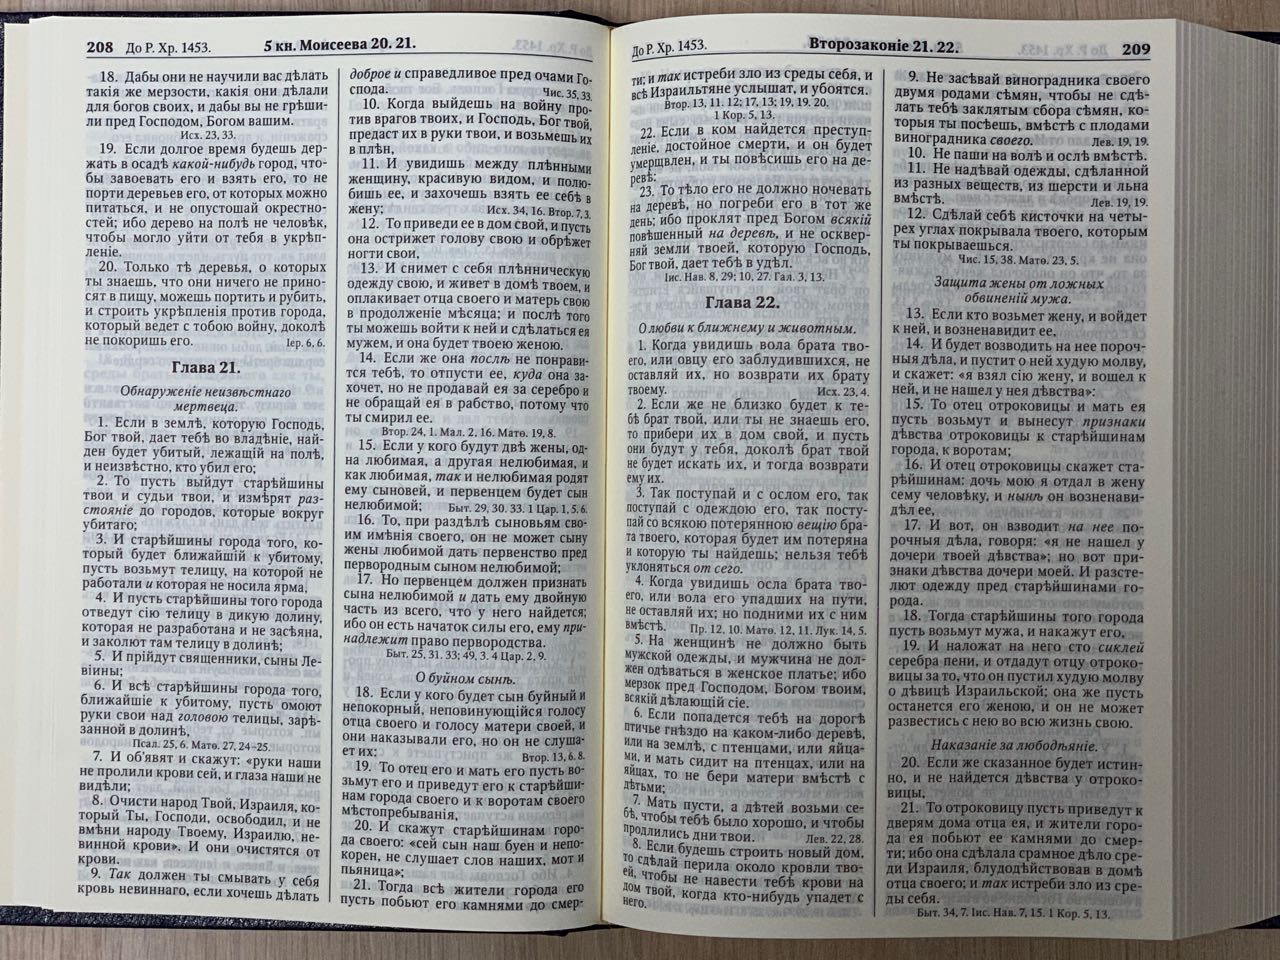 Библия Геце "с оливковой ветвью" 063 формат  (145*215 мм), чуть больше среднего  (твердый переплет, прошитая), цвет синий металлик под ткань, код 1163